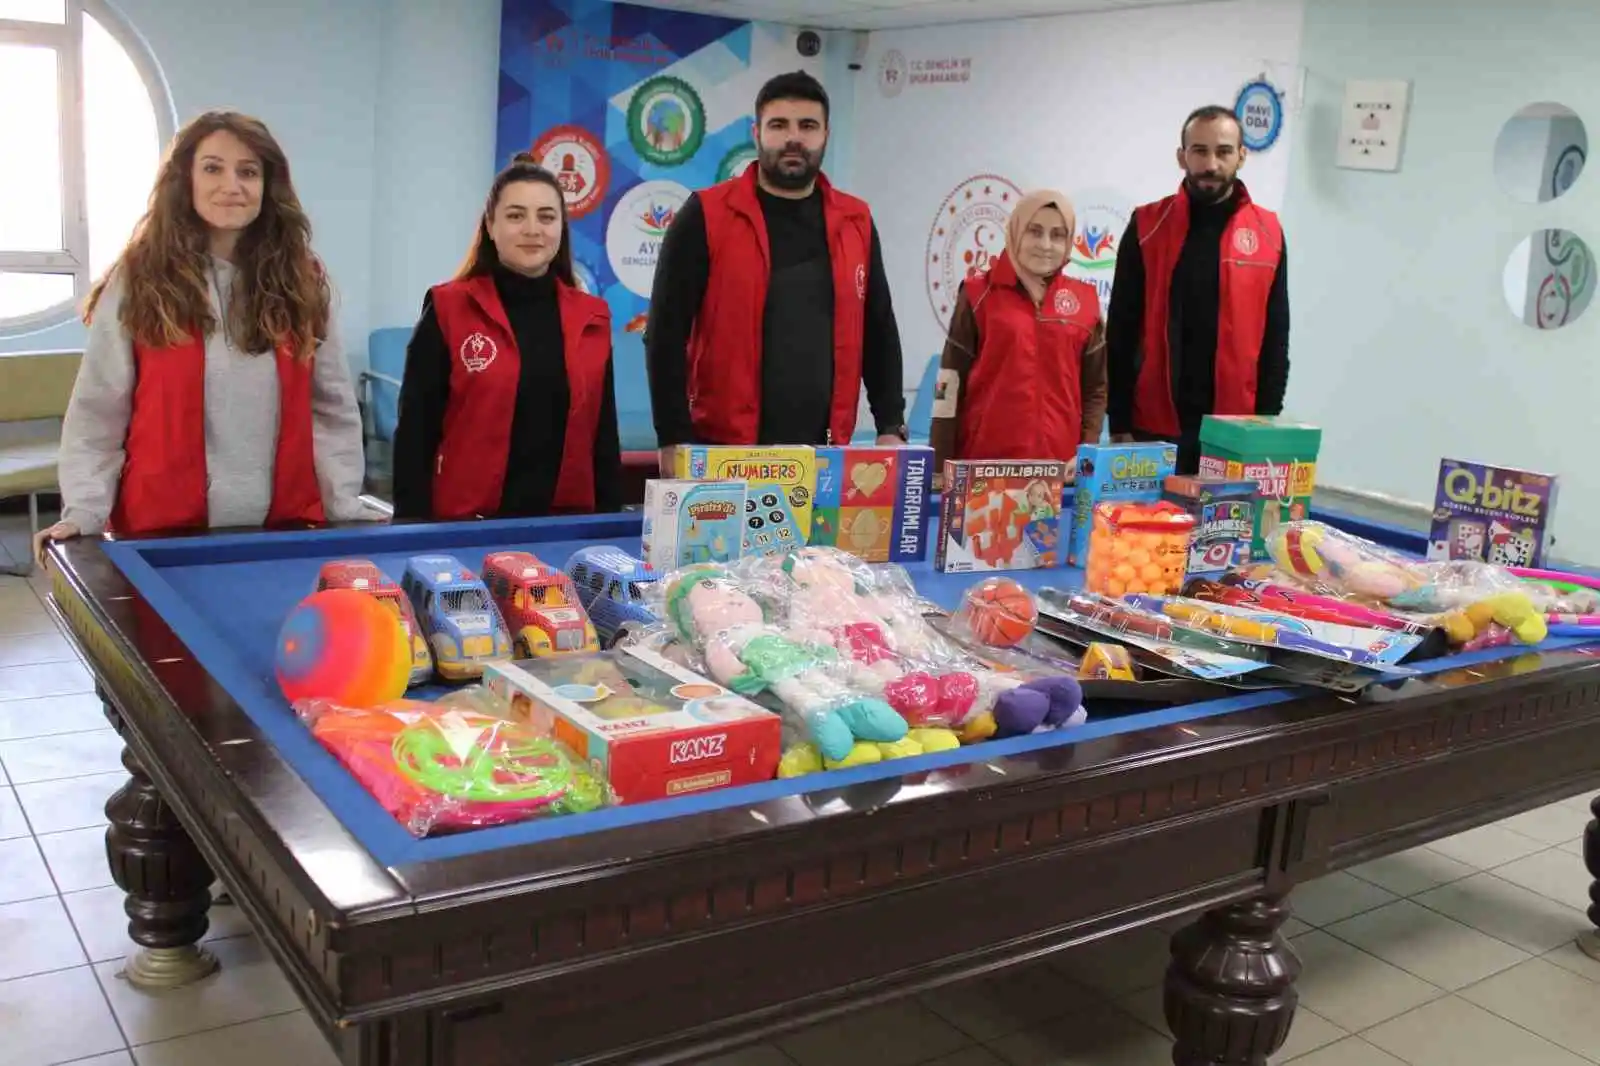 Aydın'da depremzede çocuklar için oyuncak kampanyası başlatıldı
